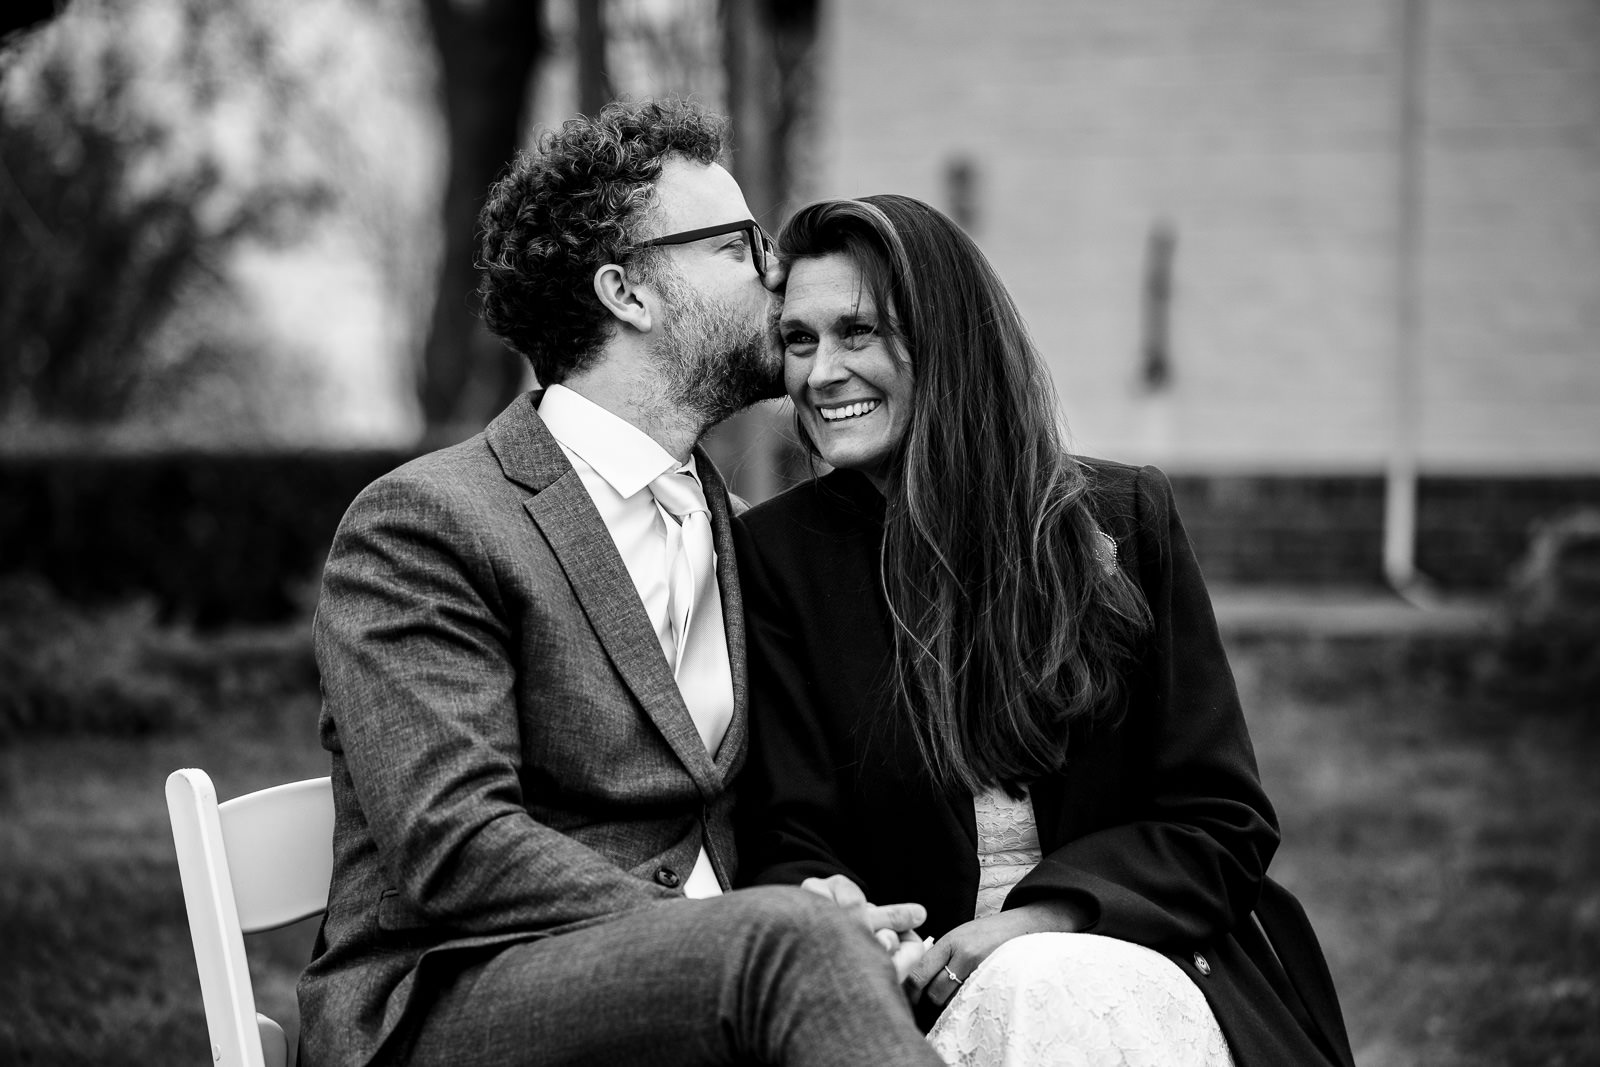 Trouwfotograaf Leeuwarden Friesland liefdevolle kus van de bruidegom aan bruid tijdens de trouwceremonie